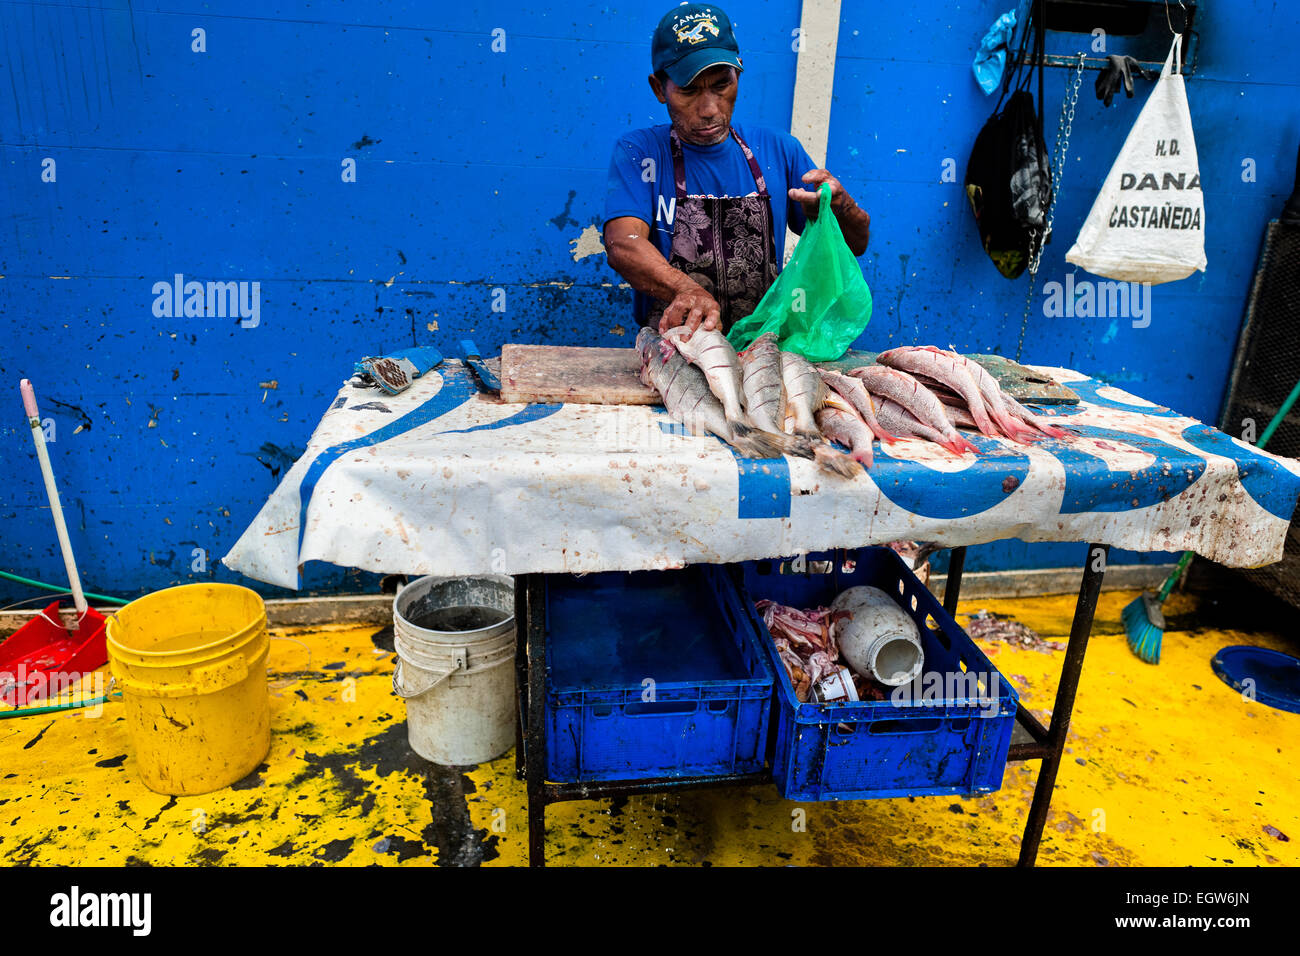 Un pescador panameño limpia el pescado al Mercado de Mariscos el mercado de mariscos y pescados en la Ciudad de Panamá, Panamá. Foto de stock